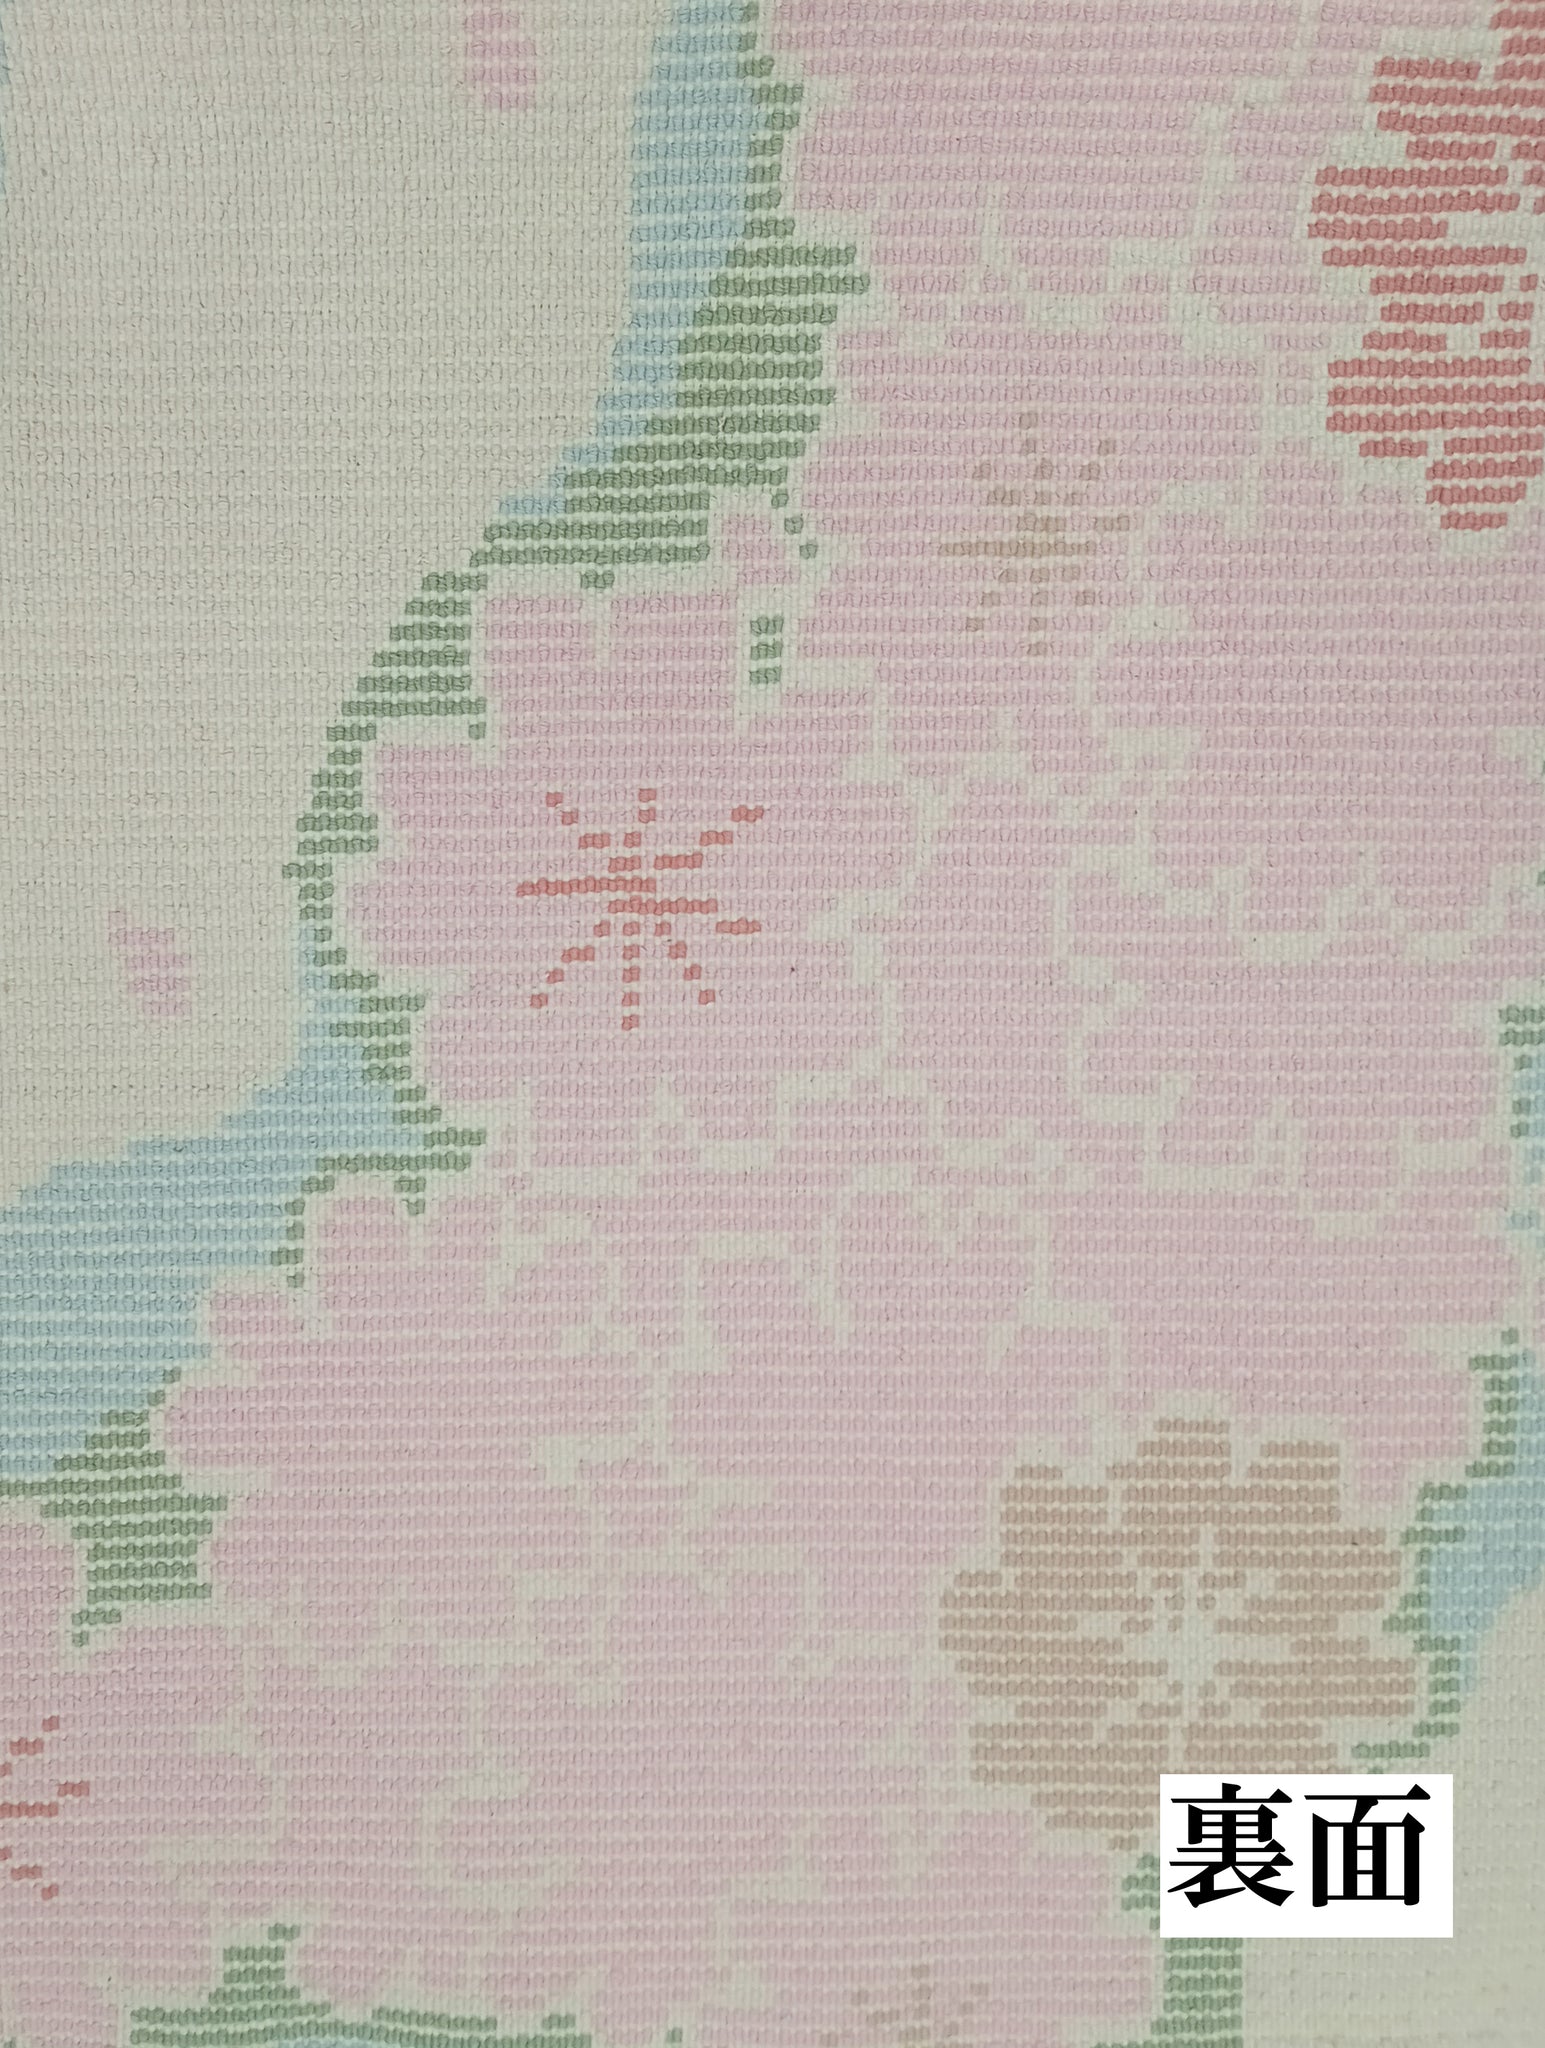 第57回西部伝統工芸展 四代目入選作品 桜「Sakura」 – 本家鍋島緞通